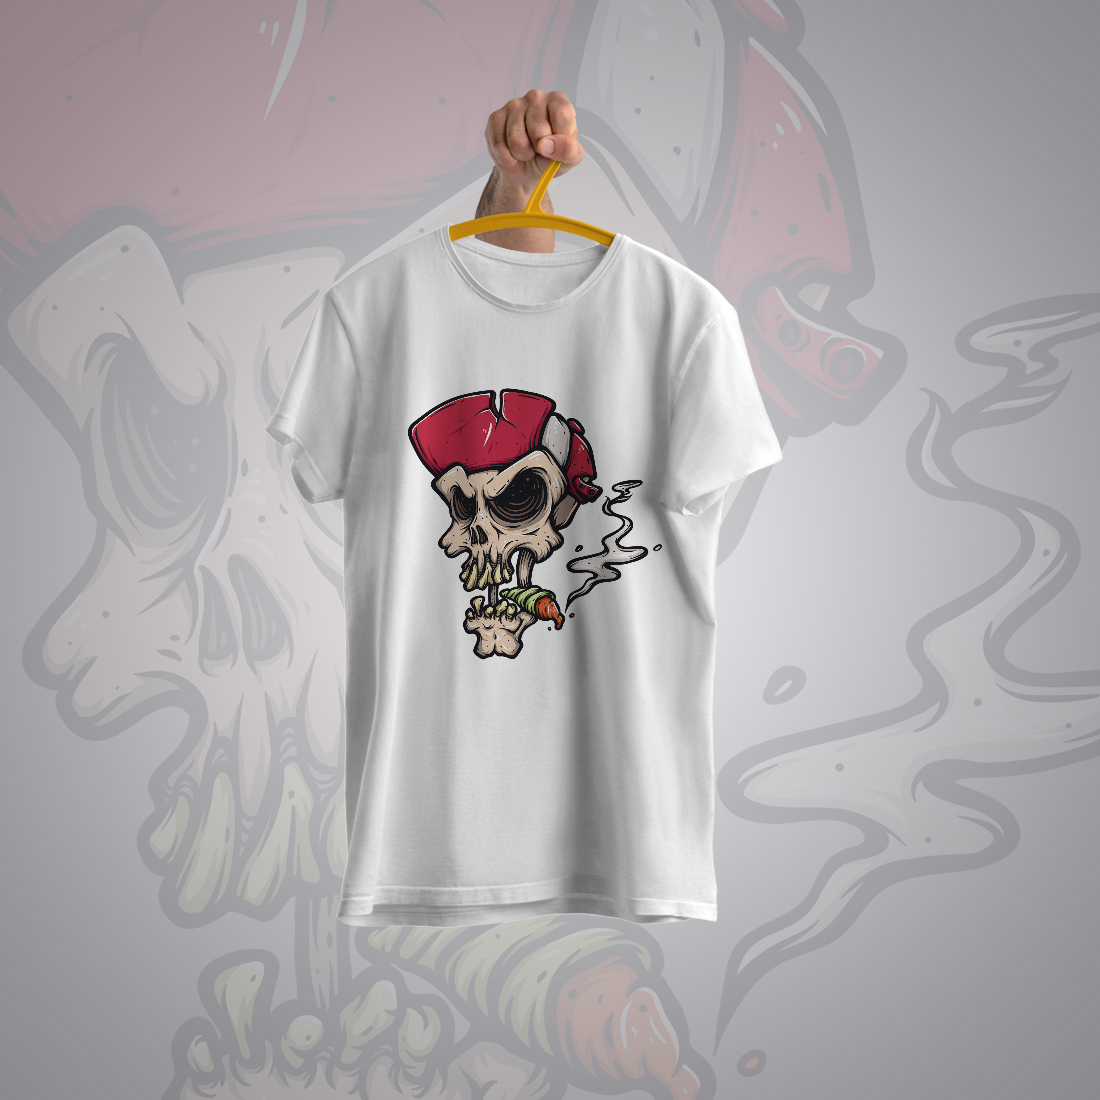 Skull Head T-Shirt Design cover image.